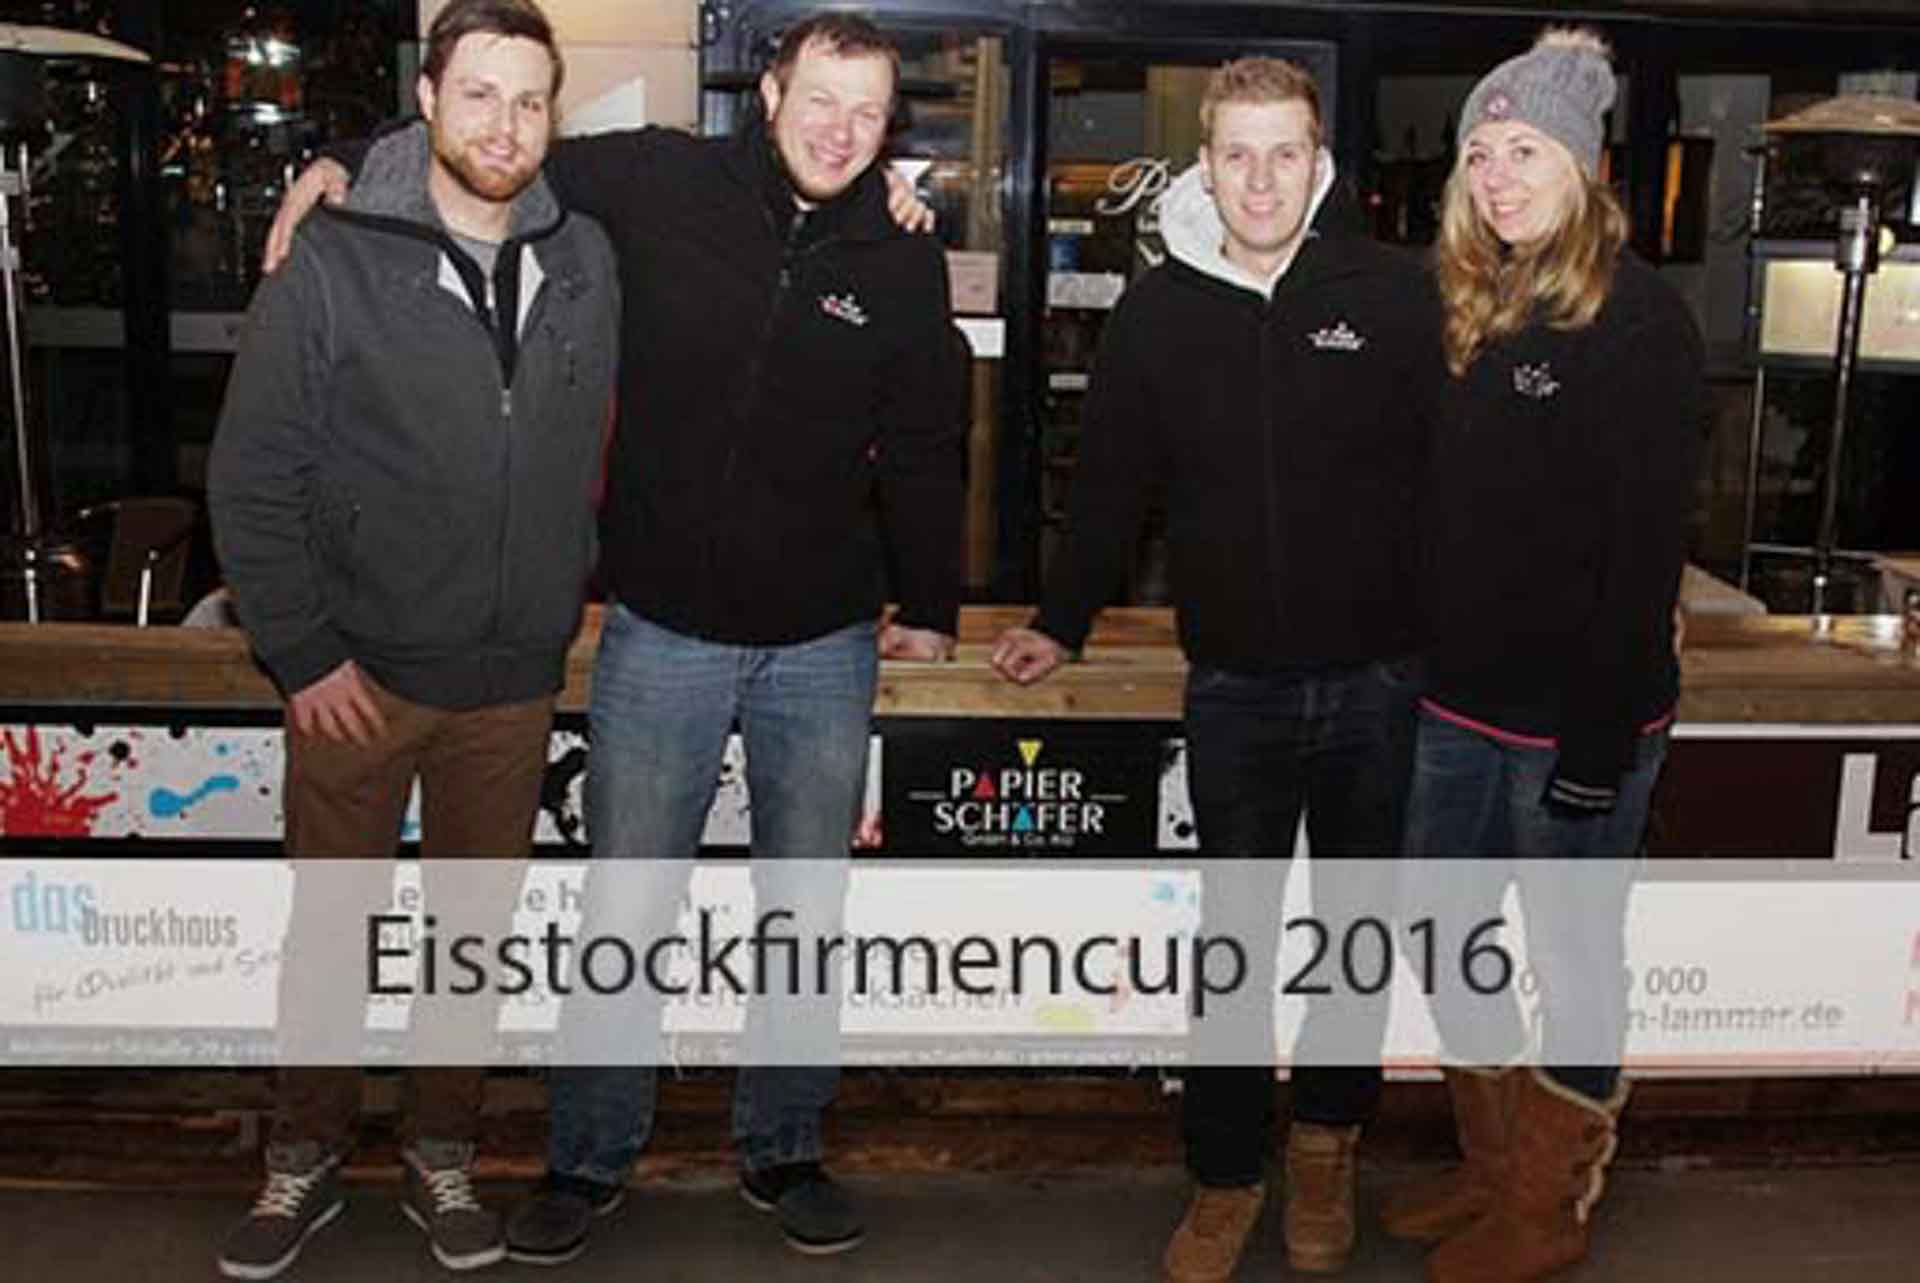 Eisstockfirmencup 2016 | Papier-Schäfer GmbH & Co. KG